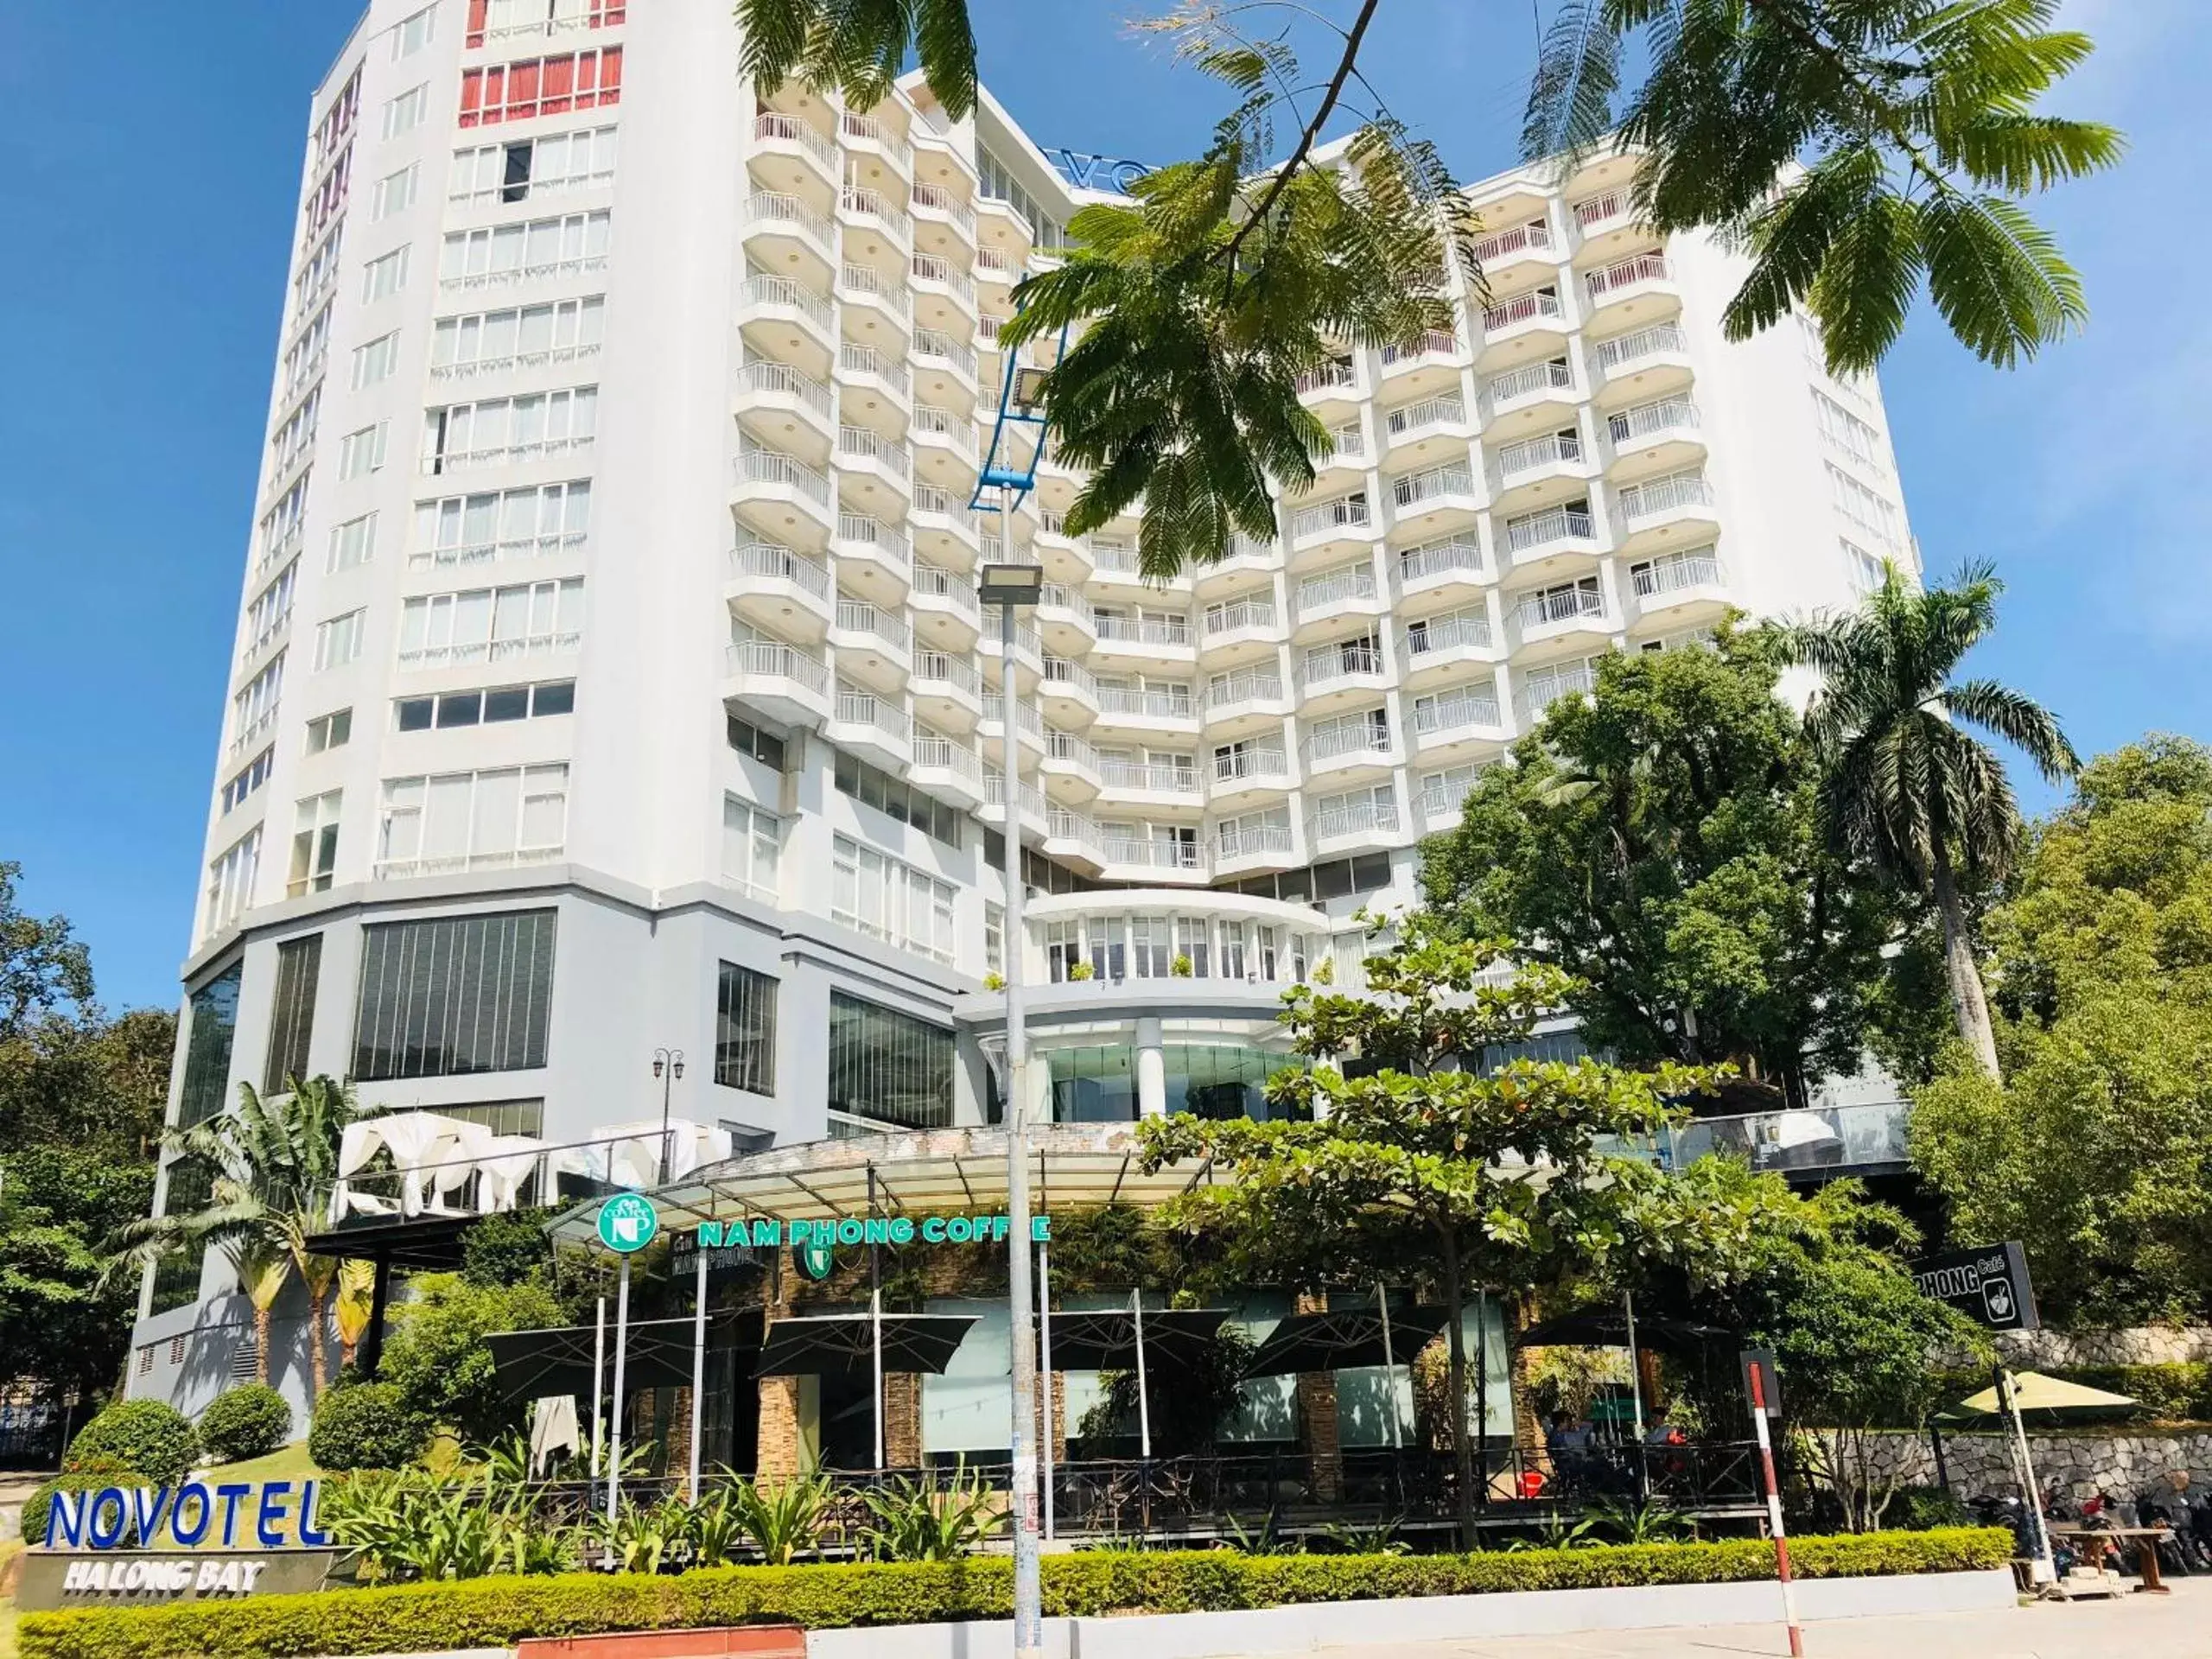 Property Building in Novotel Ha Long Bay Hotel